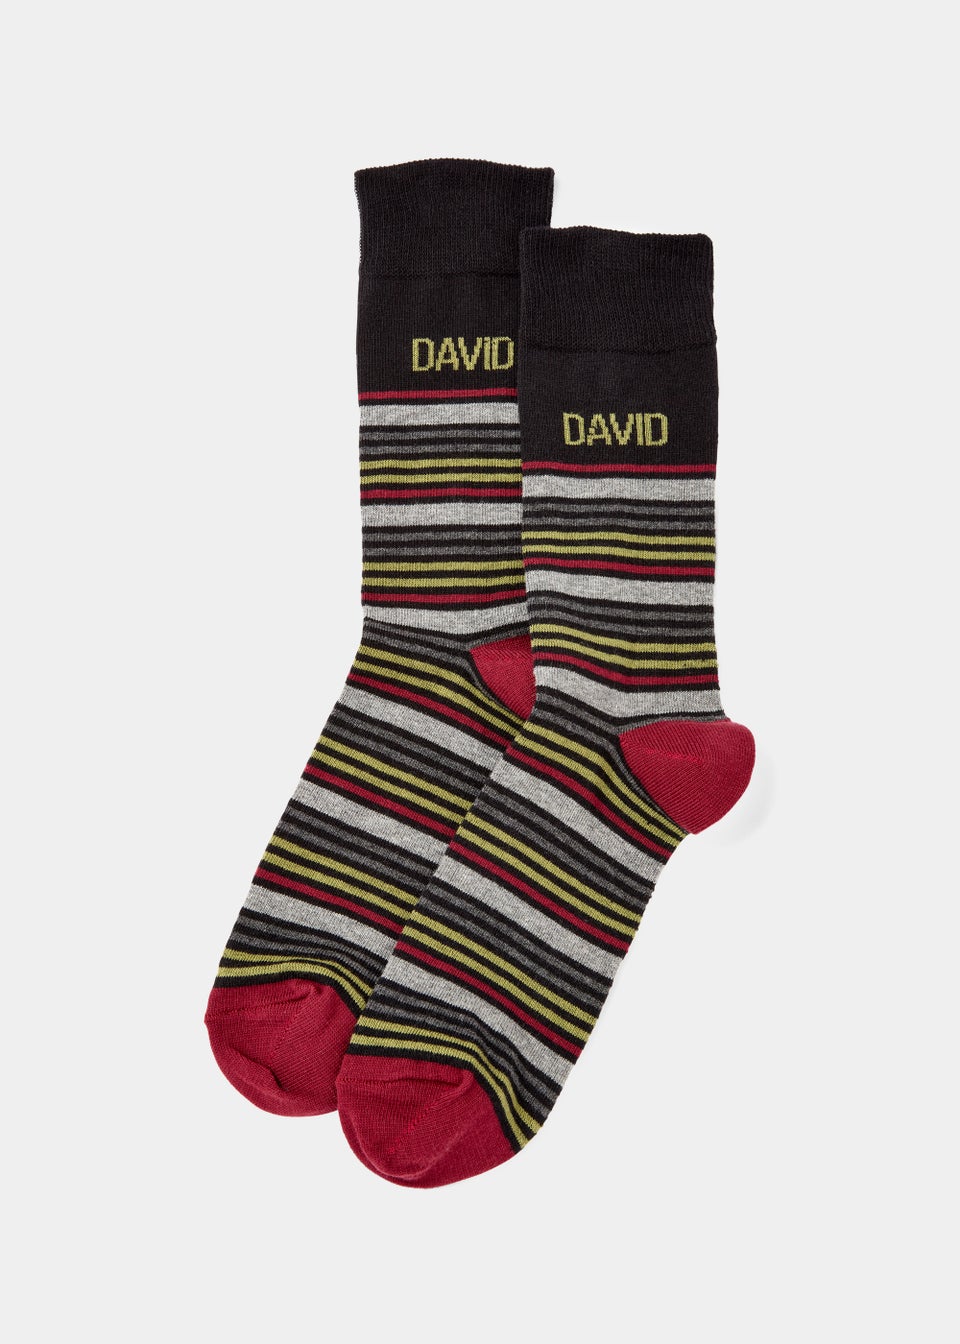 Multicoloured David Name Socks